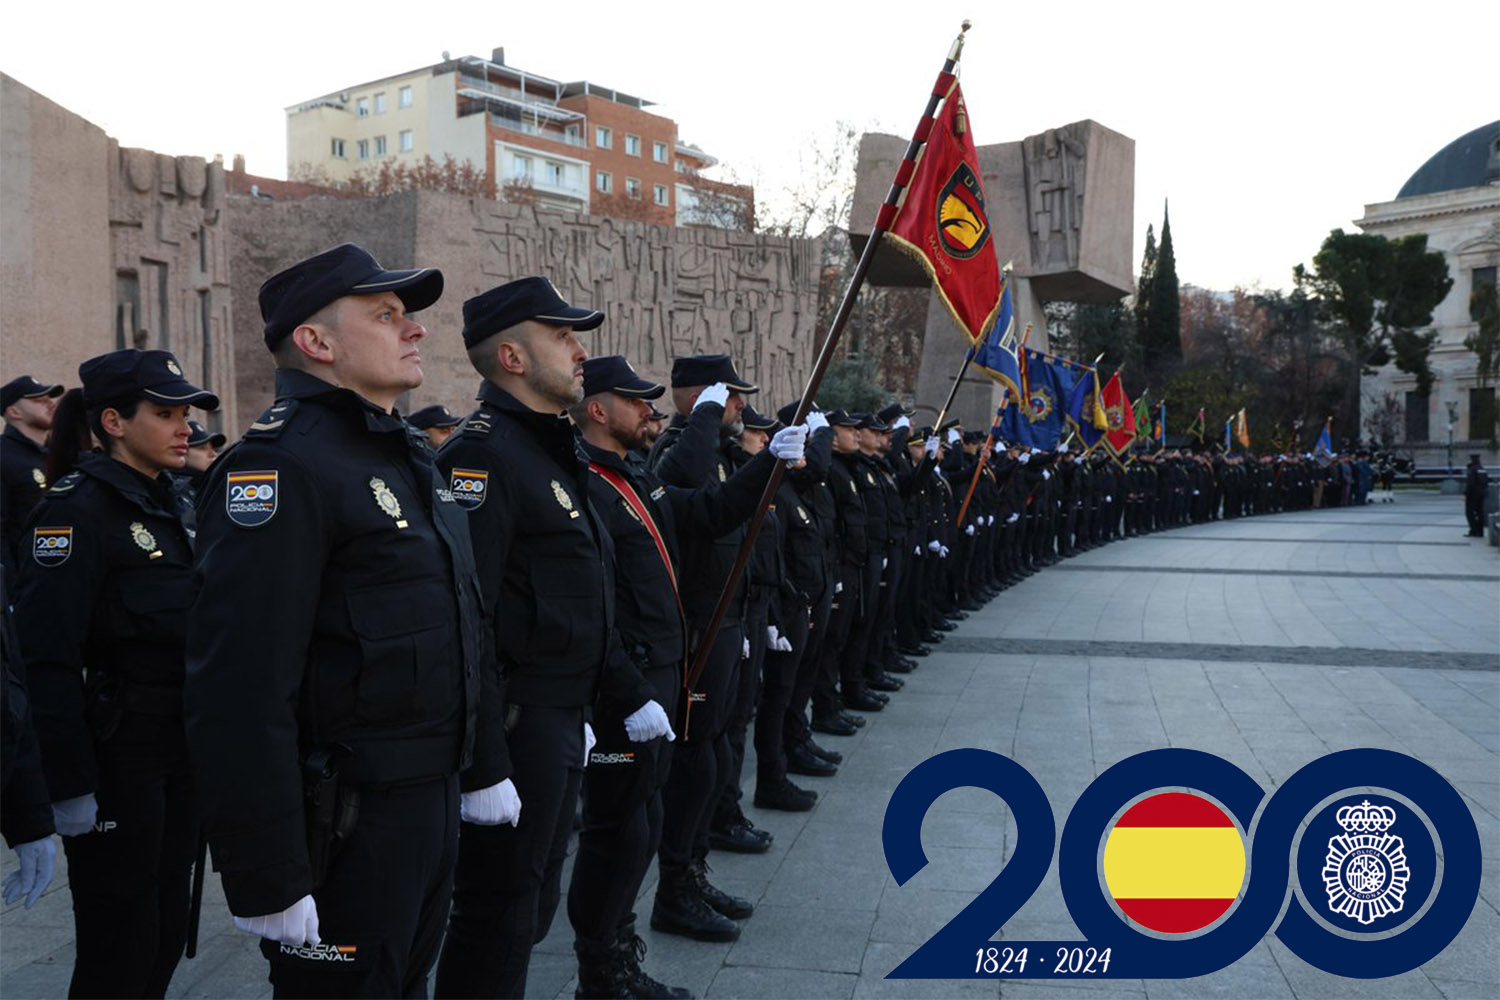 La Policía Nacional celebra sus 200 años de historia al servicio de España